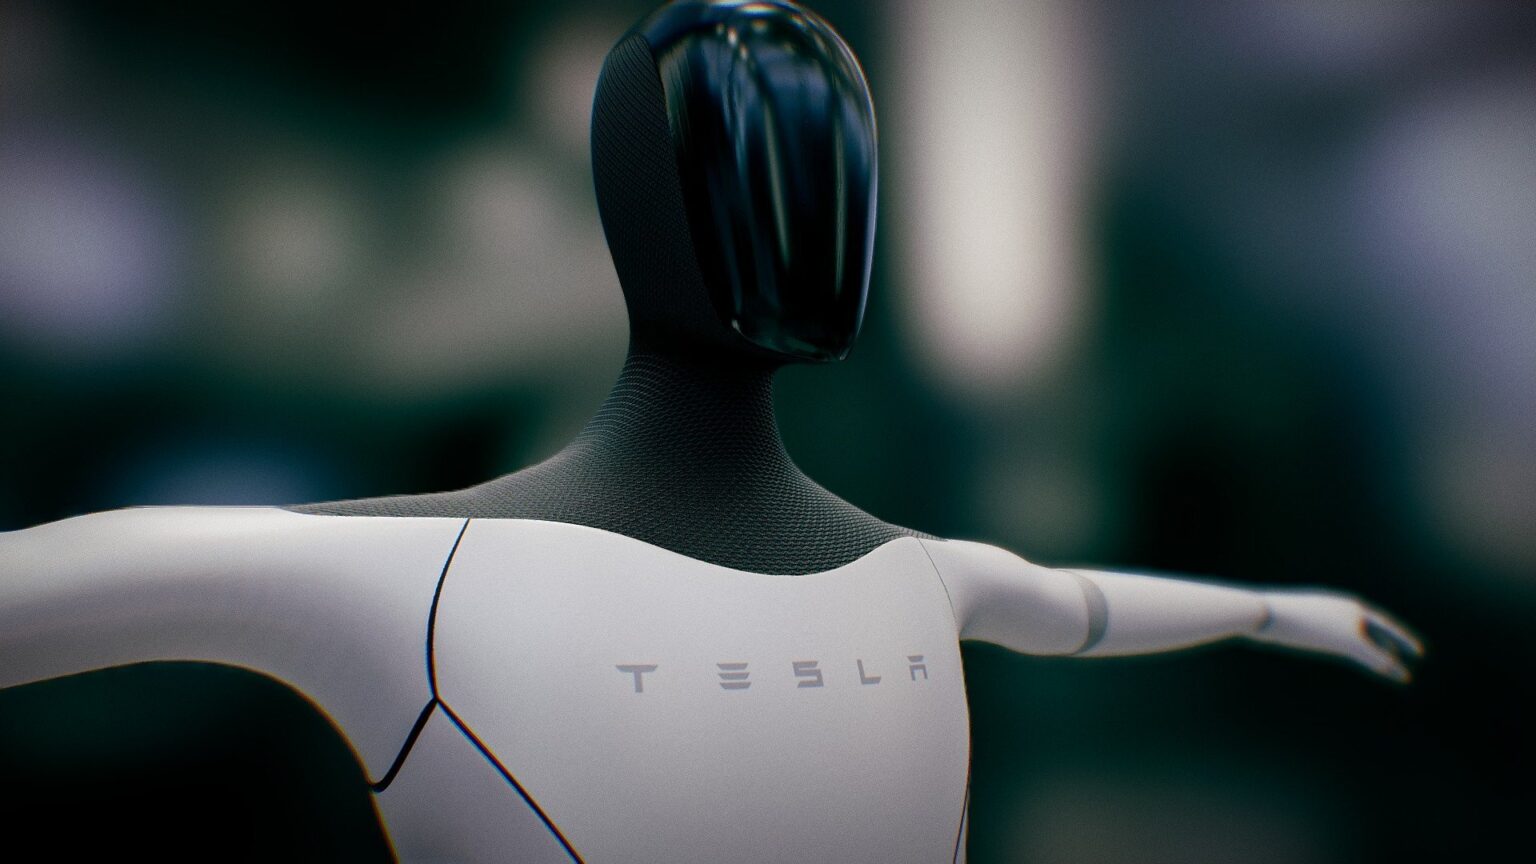 特斯拉CEO马斯克发布人形机器人原型Optimus - Tesla 特斯拉电动汽车 - cnBeta.COM